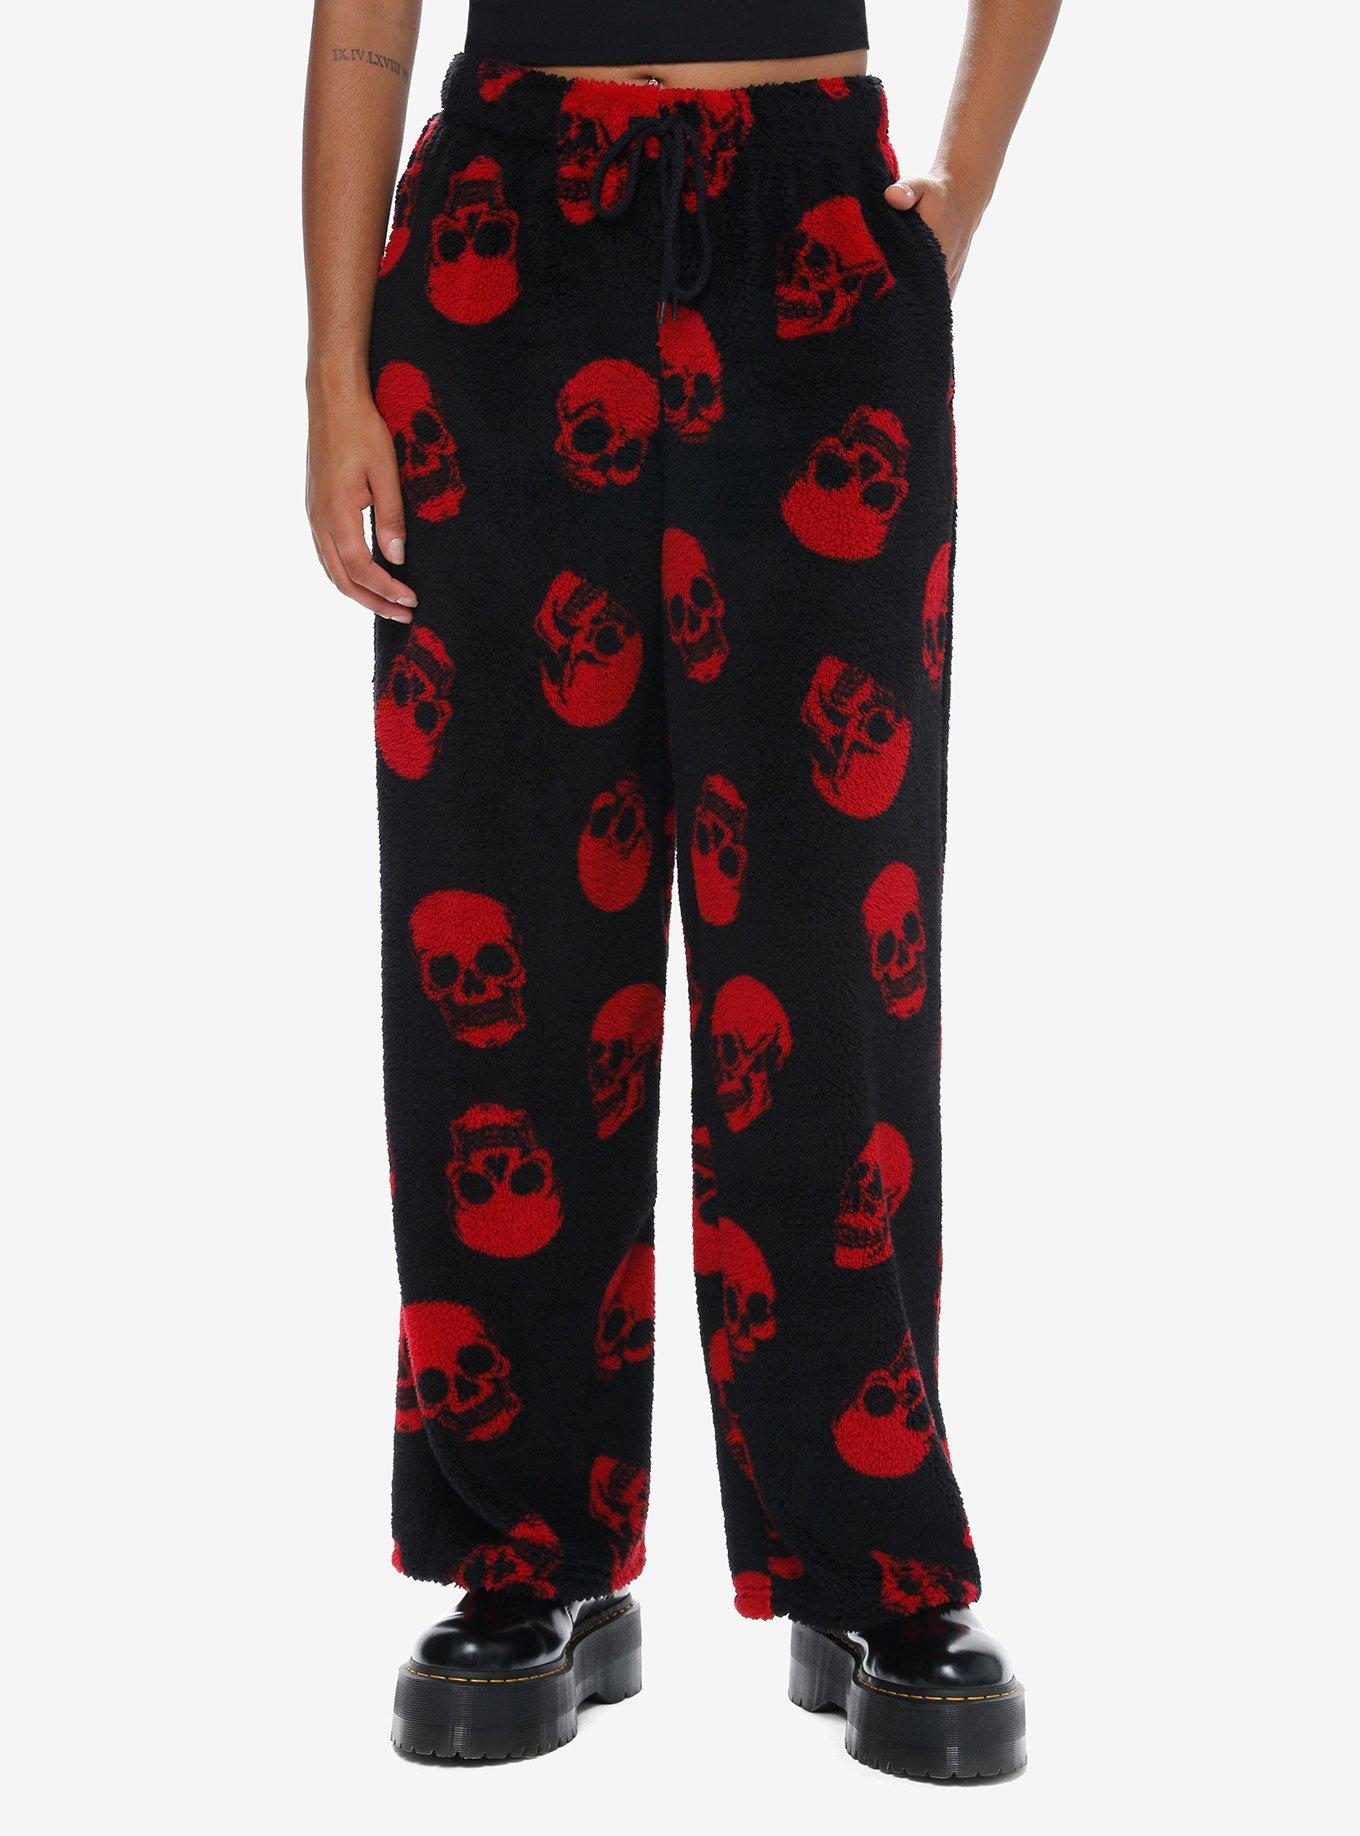 NWT Lilo & Stitch Jogger Sweat Pants Size XS Womens Jr Disney Lounge  Pajamas NEW